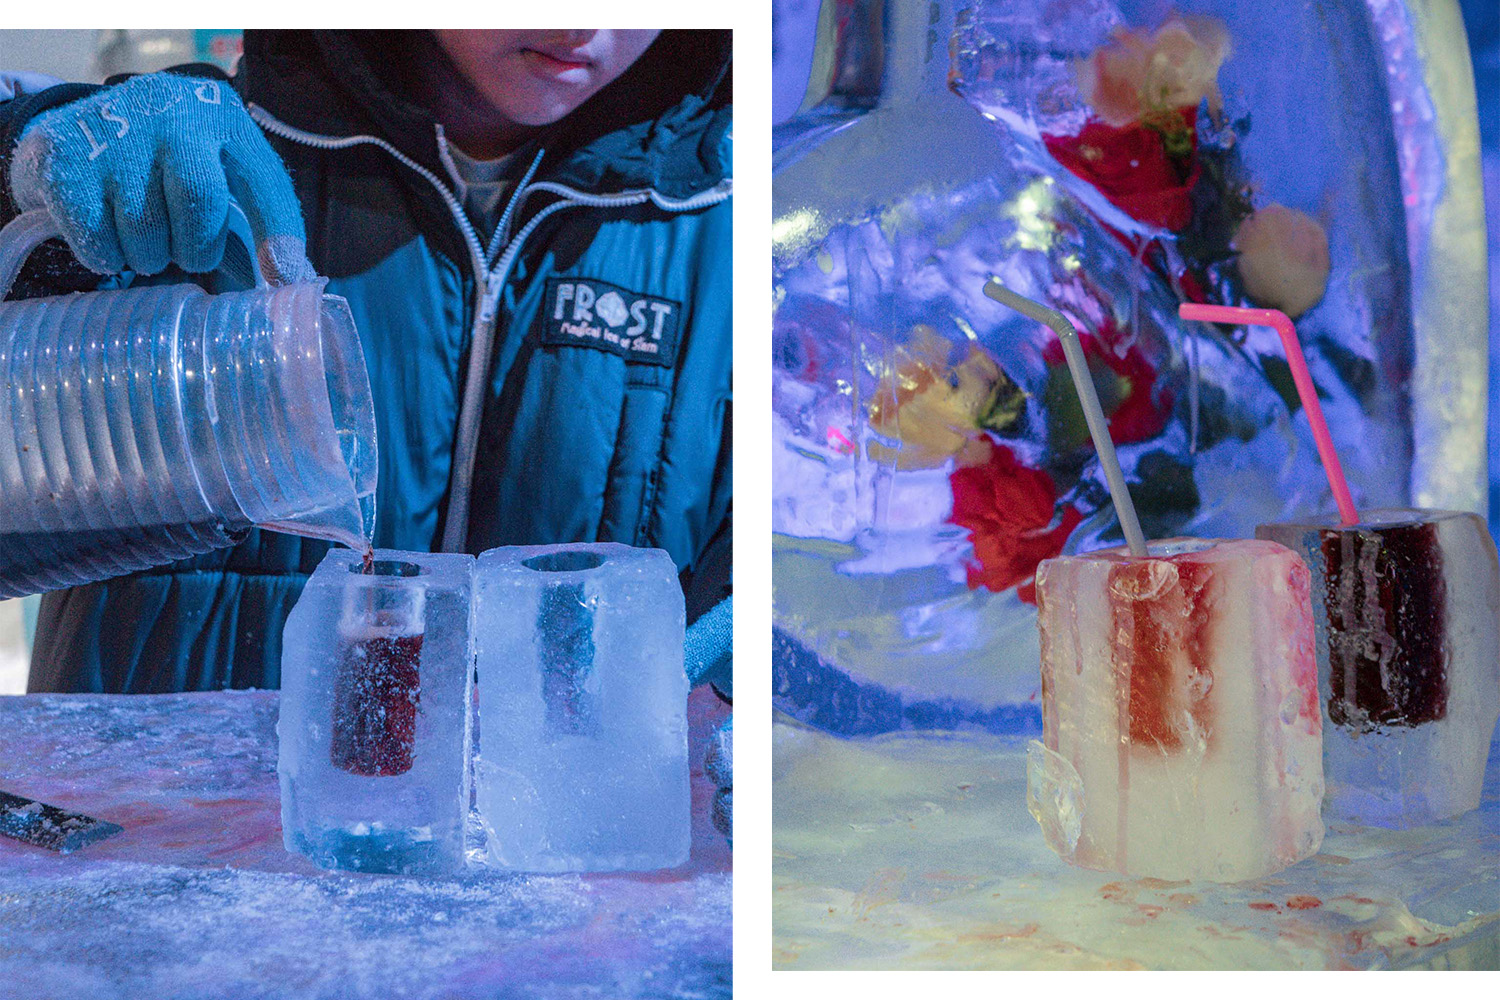 芭達雅景點｜Frost magical ice of Siam 芭達雅冰雪世界：炎熱泰國零下酷感，芭達雅冰雕樂園